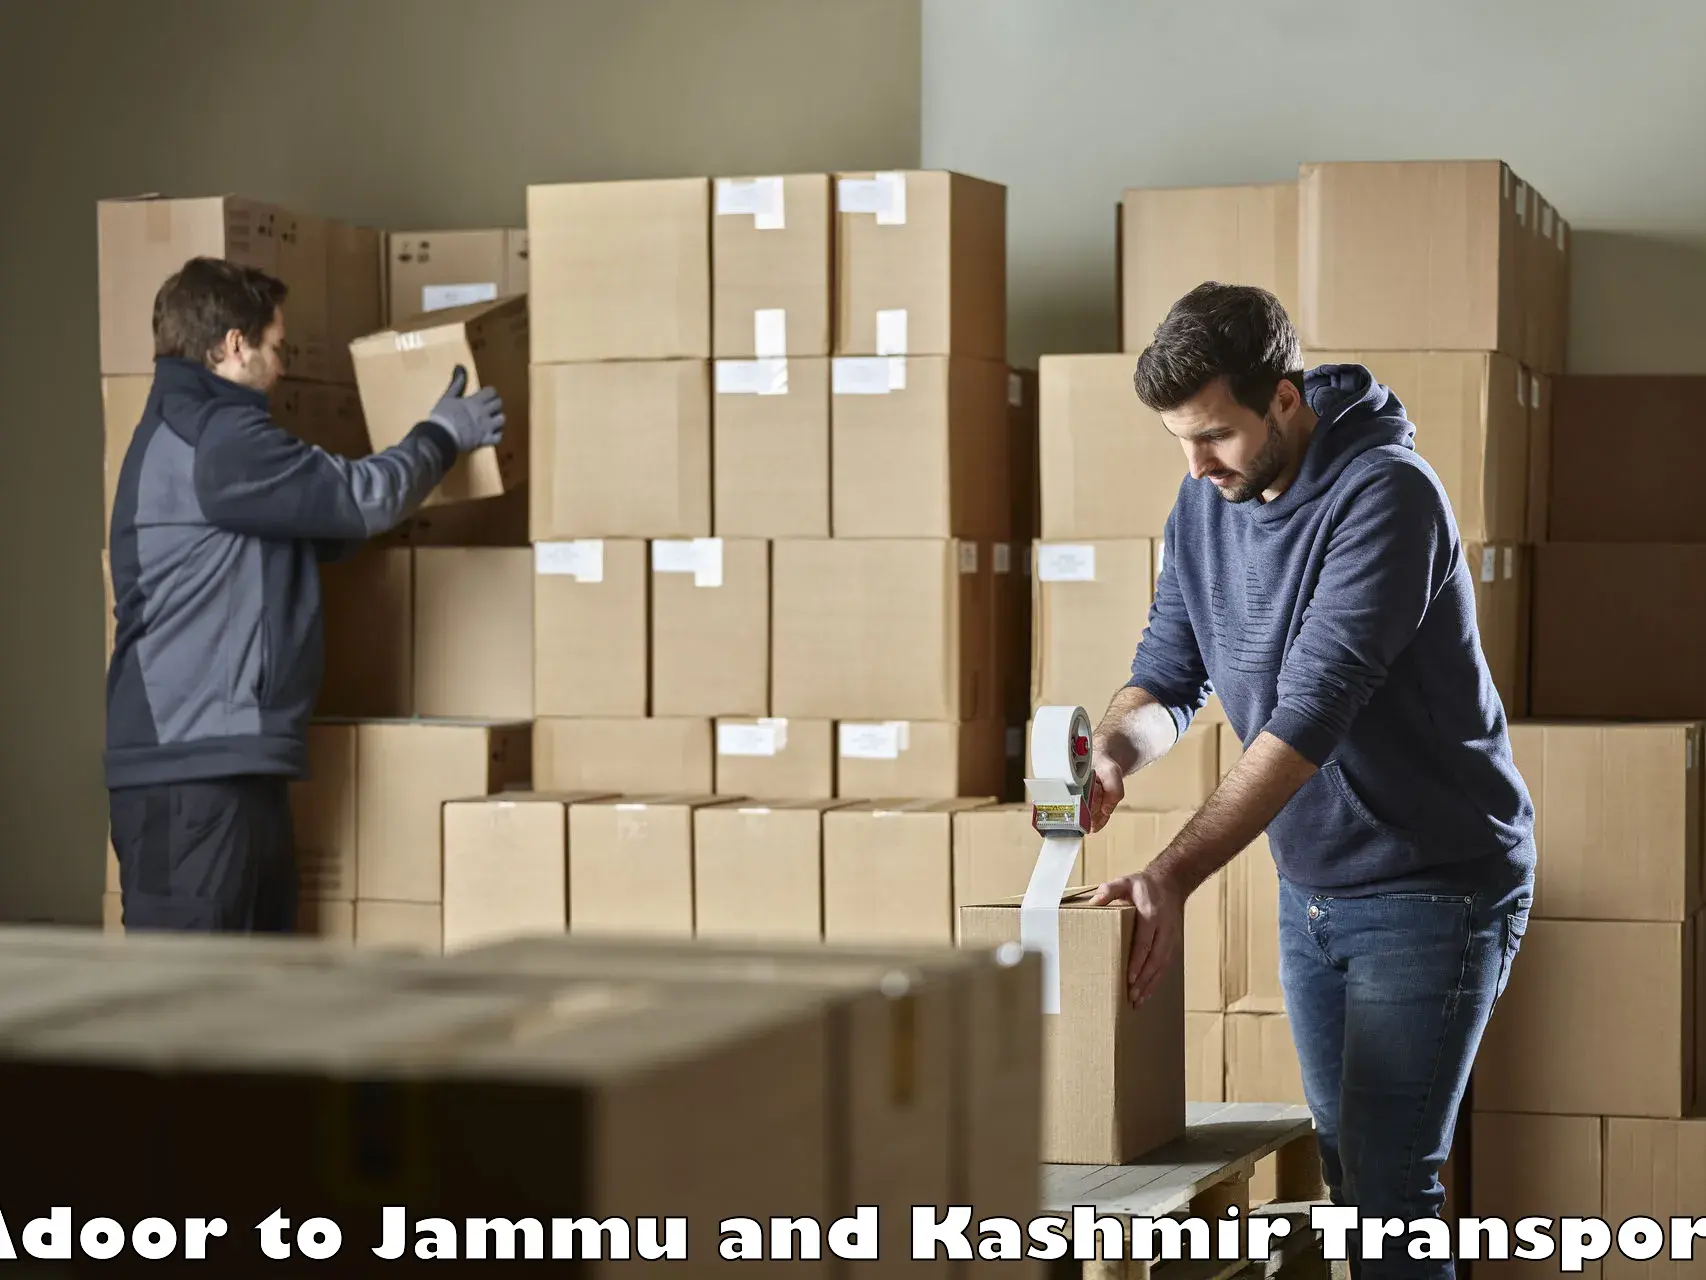 Part load transport service in India Adoor to IIT Jammu